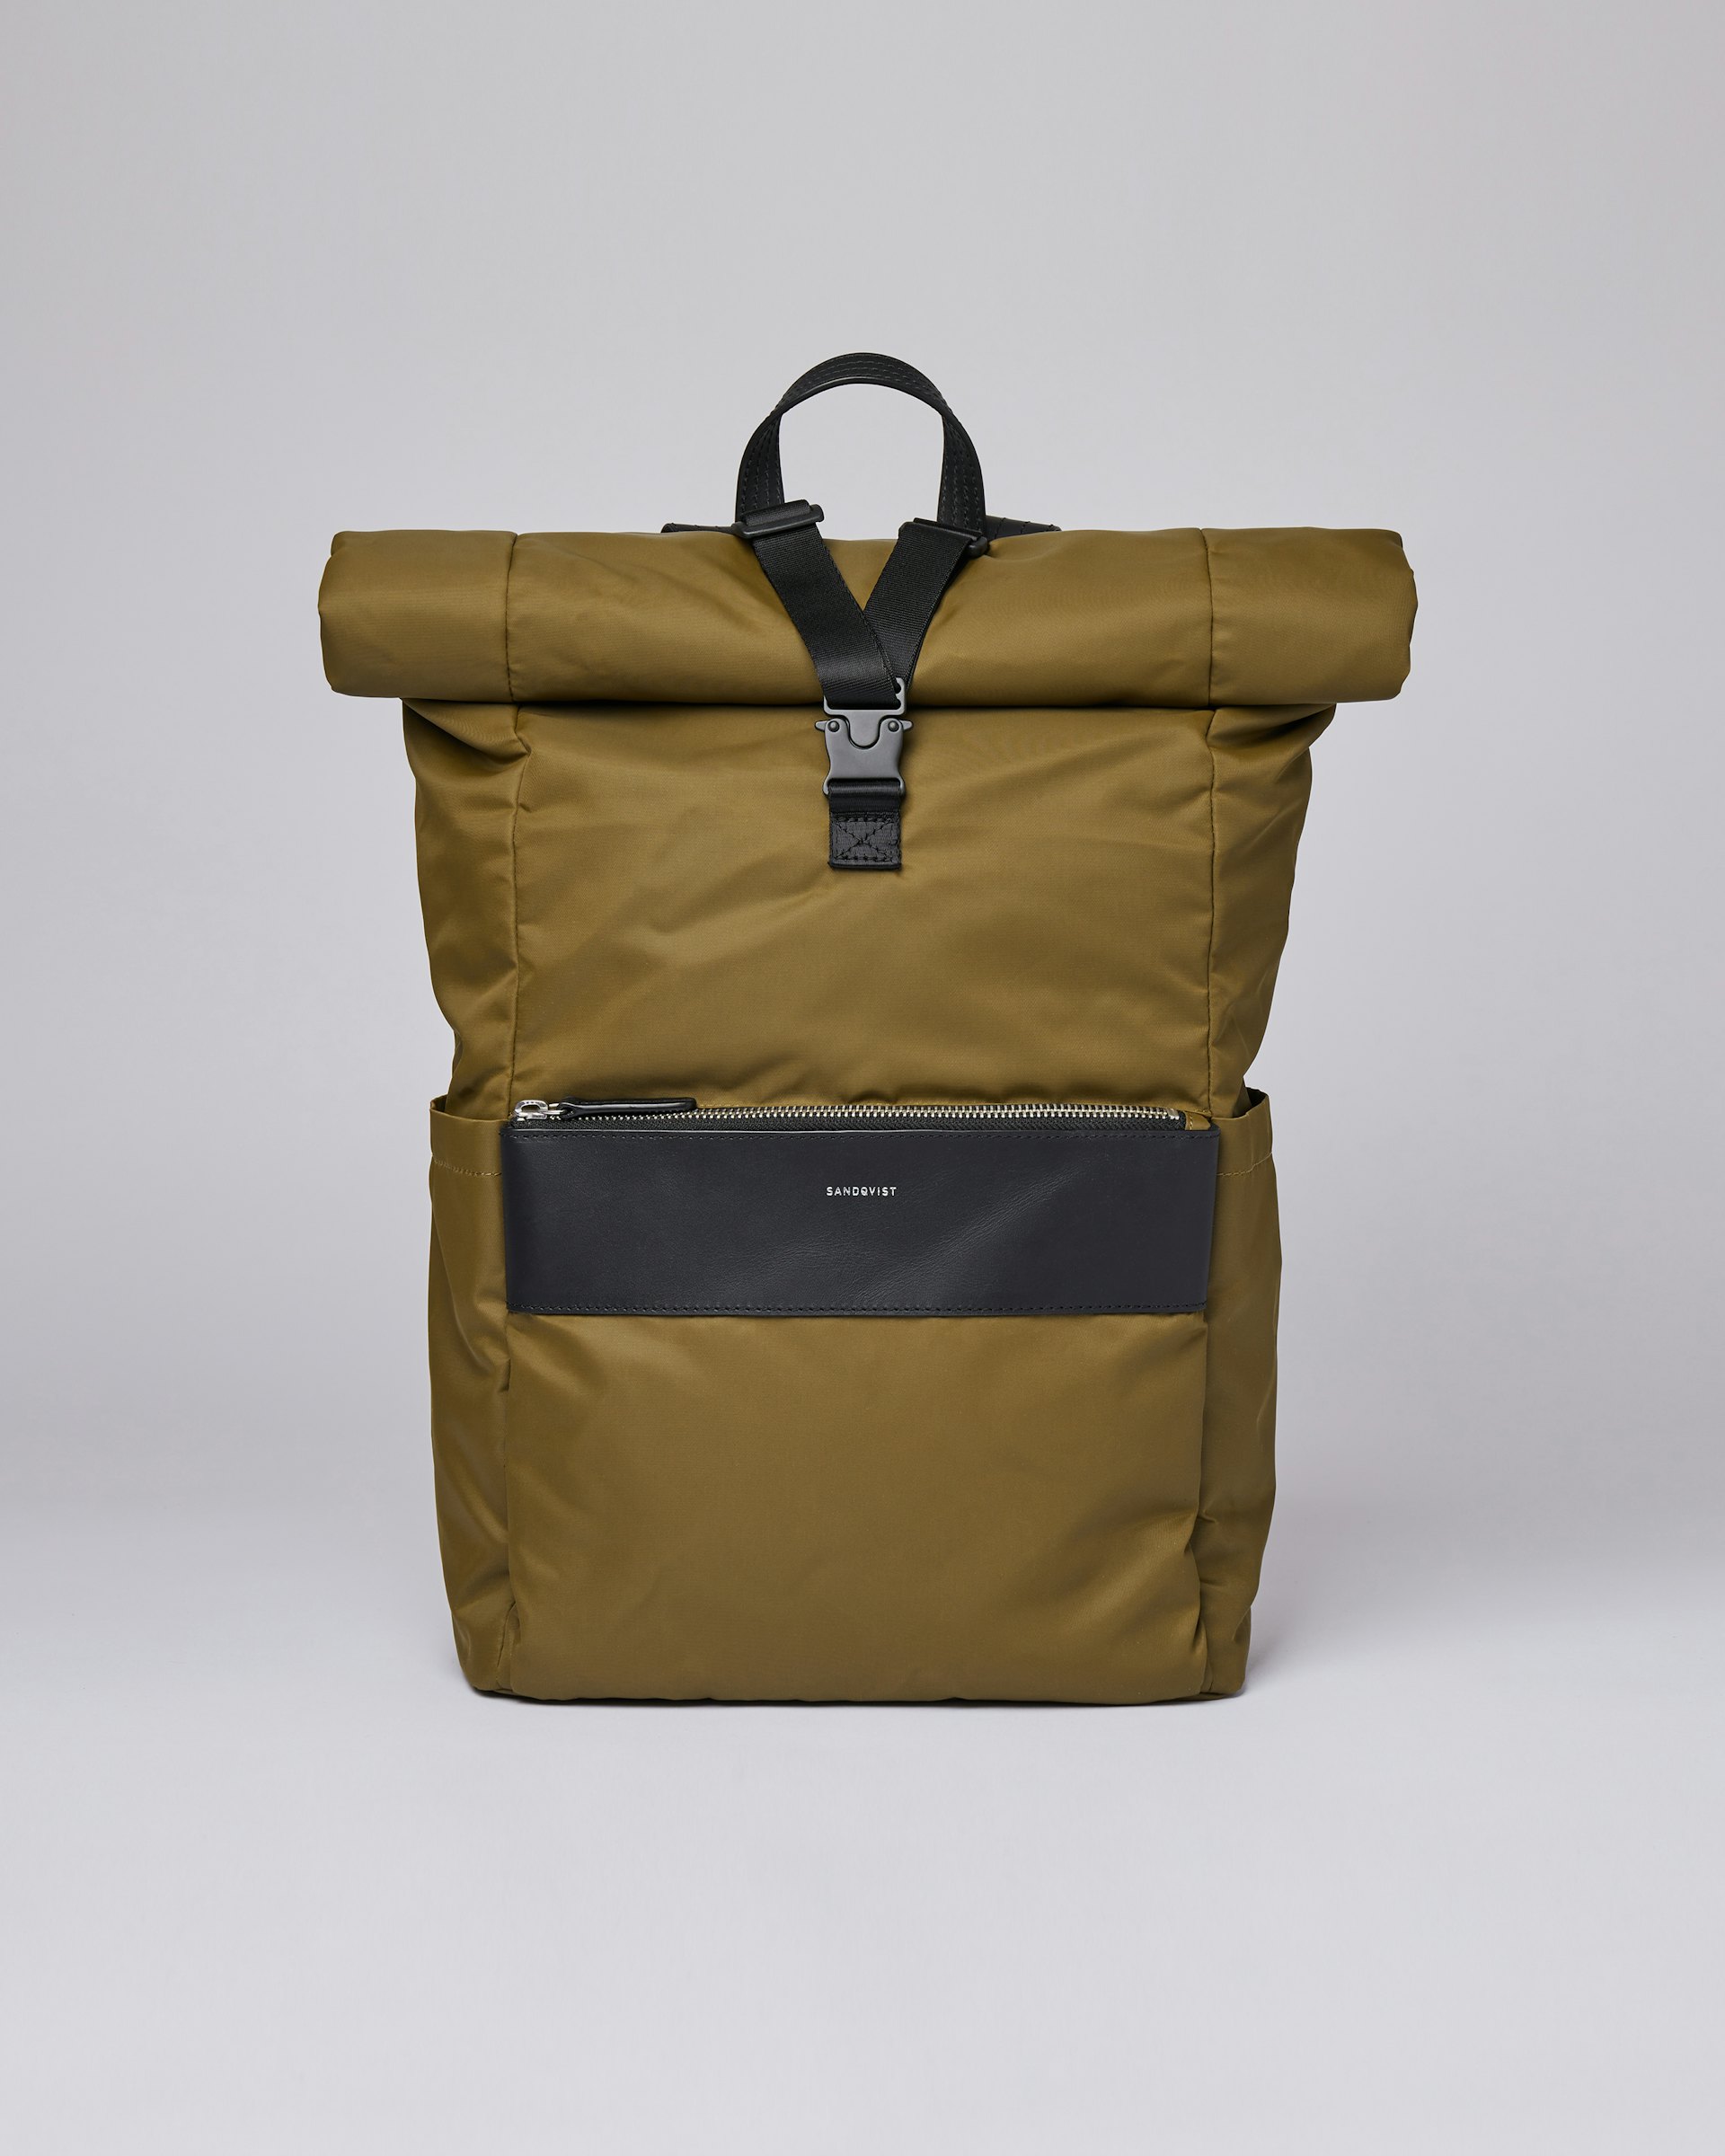 Albus gehört zur kategorie Backpacks und ist farbig military olive